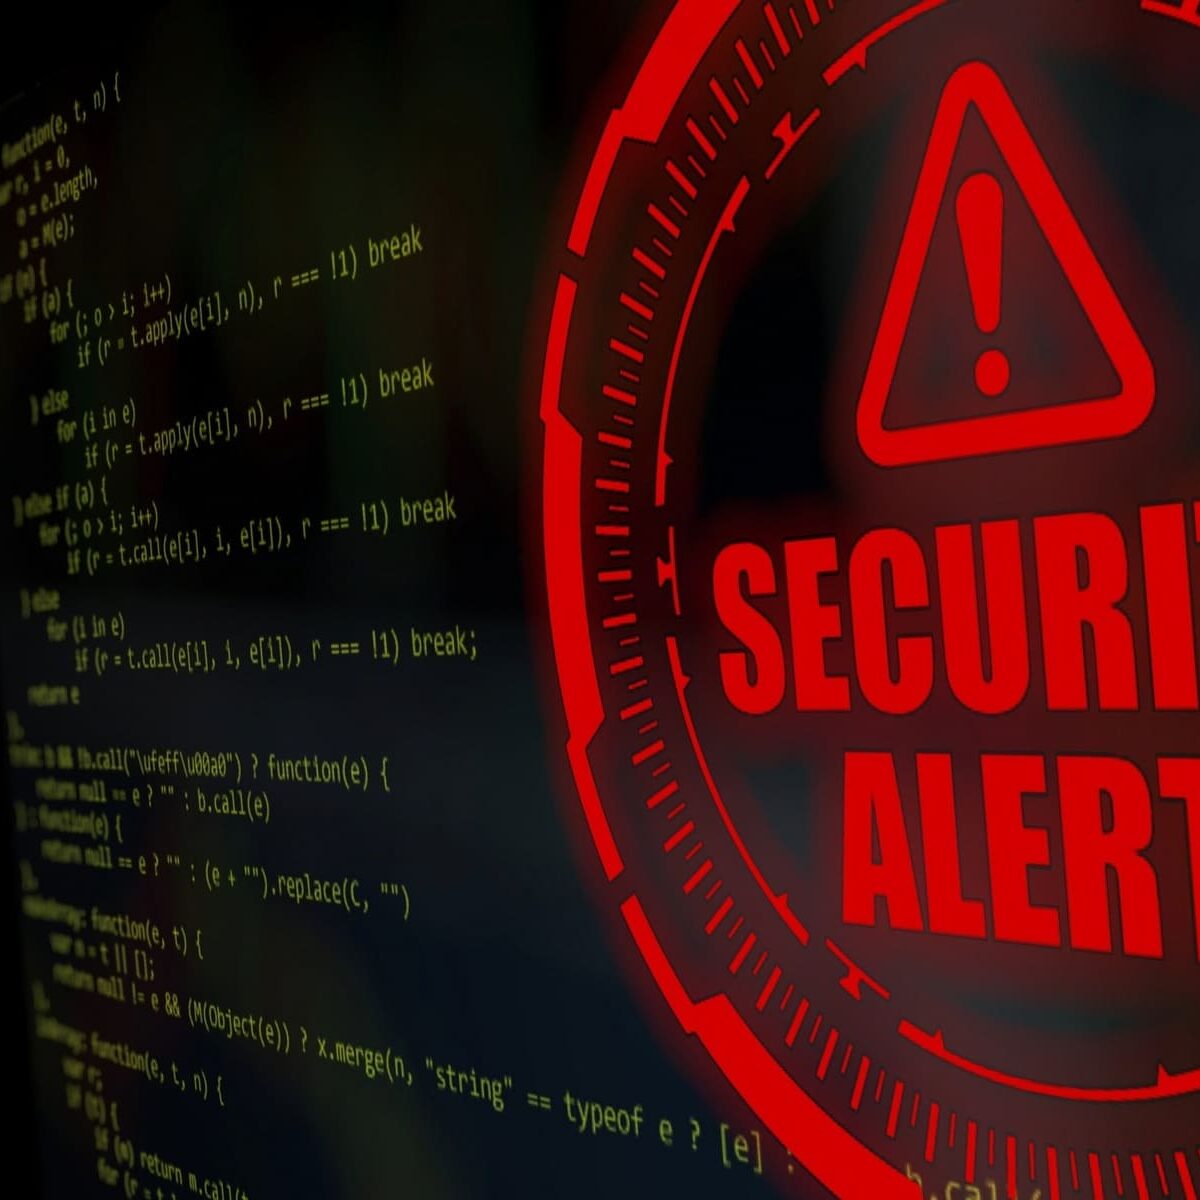 immagine con scritto security alert in rosso